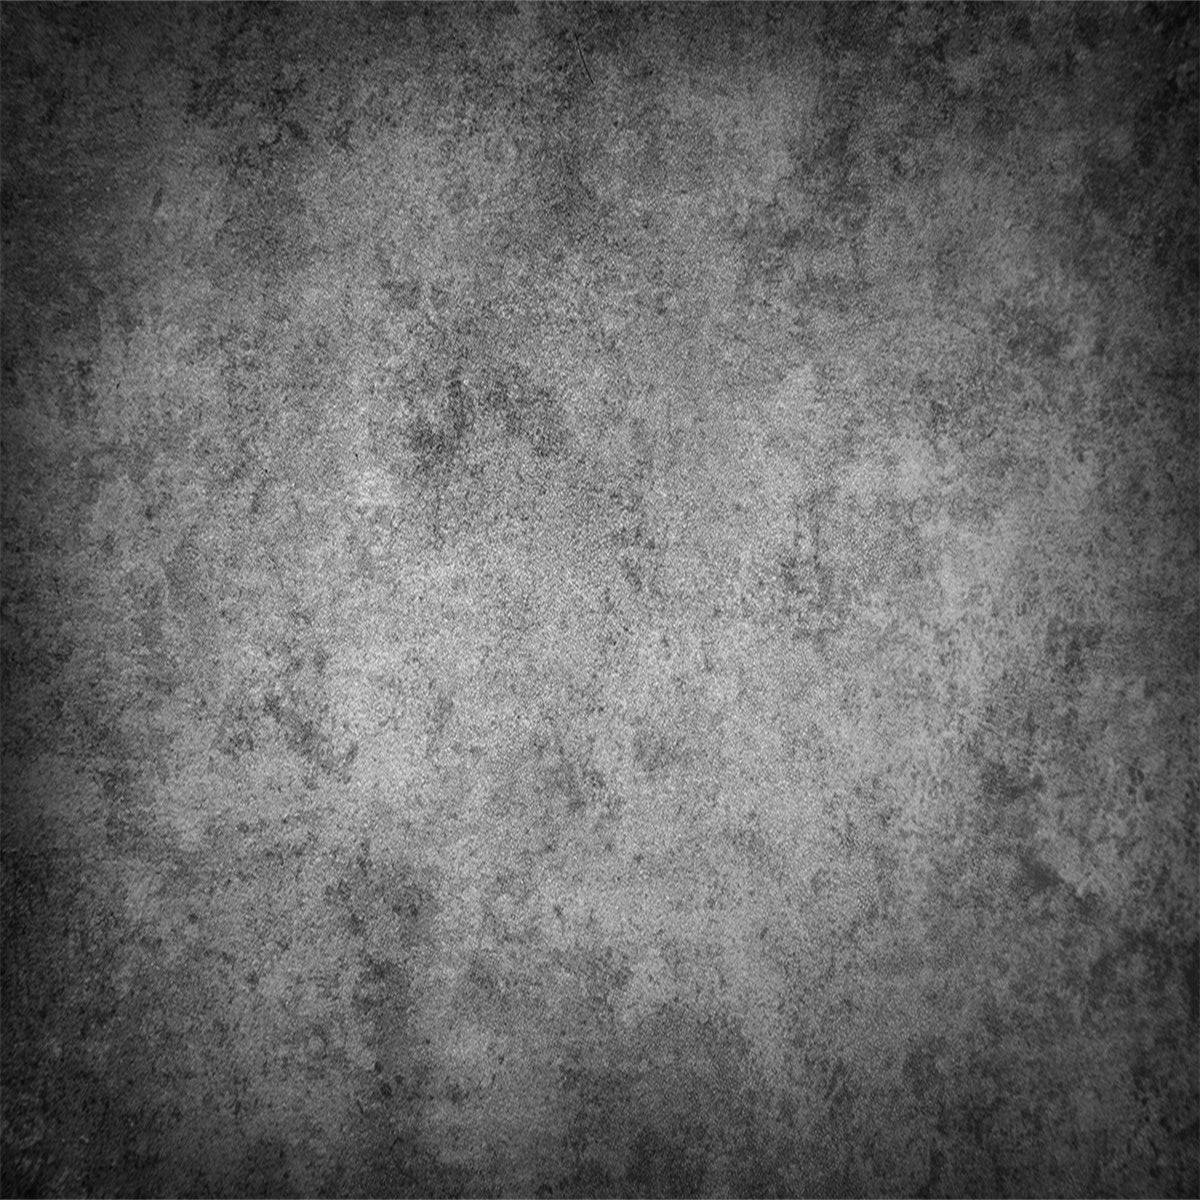 Deep Gray Master Abstract Photo Backdrop